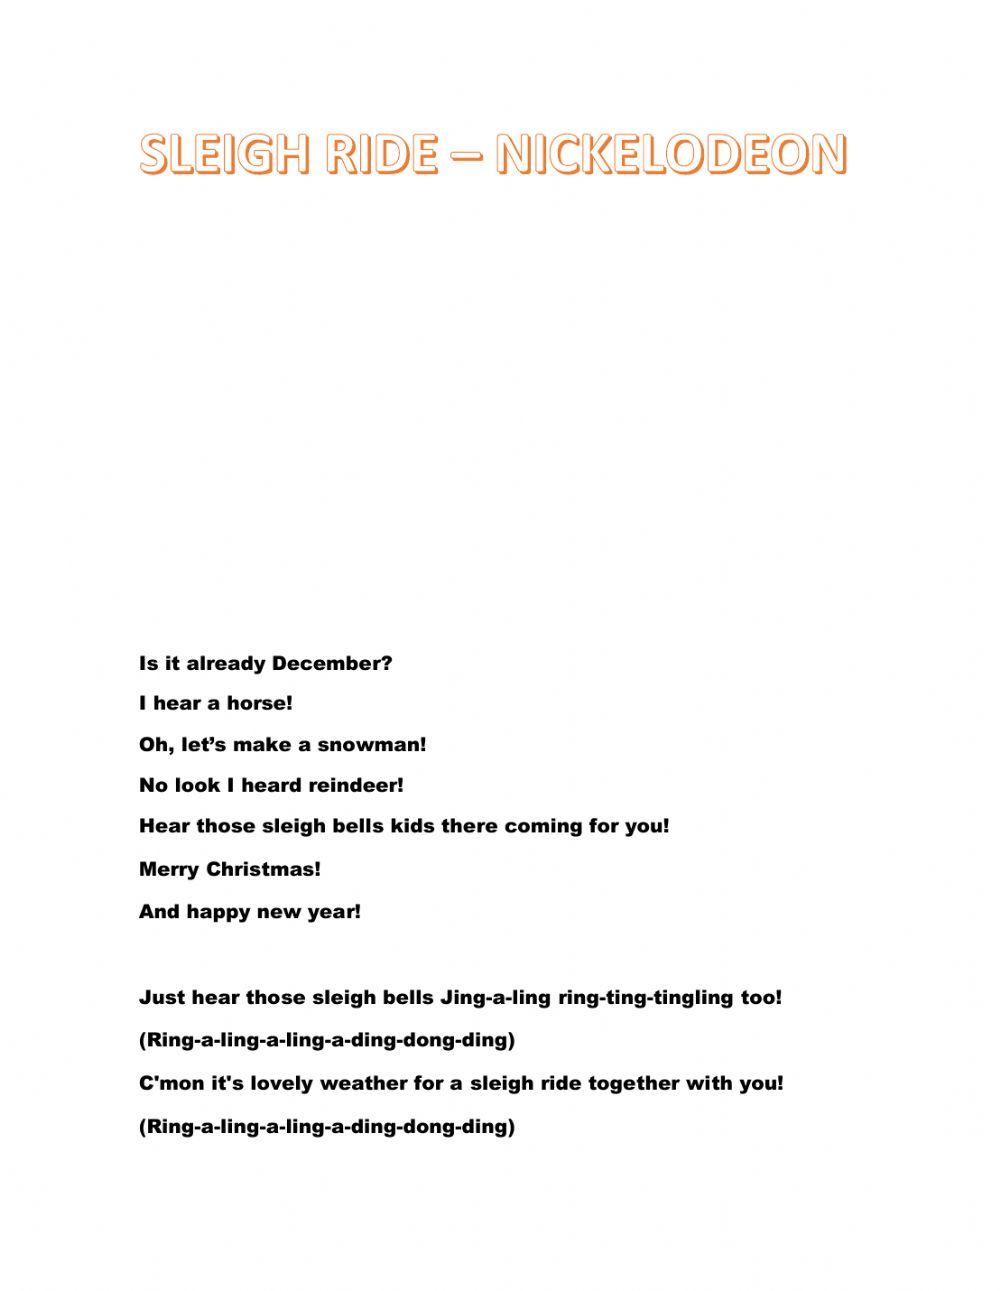 Sleigh ride - nickelodeon 2